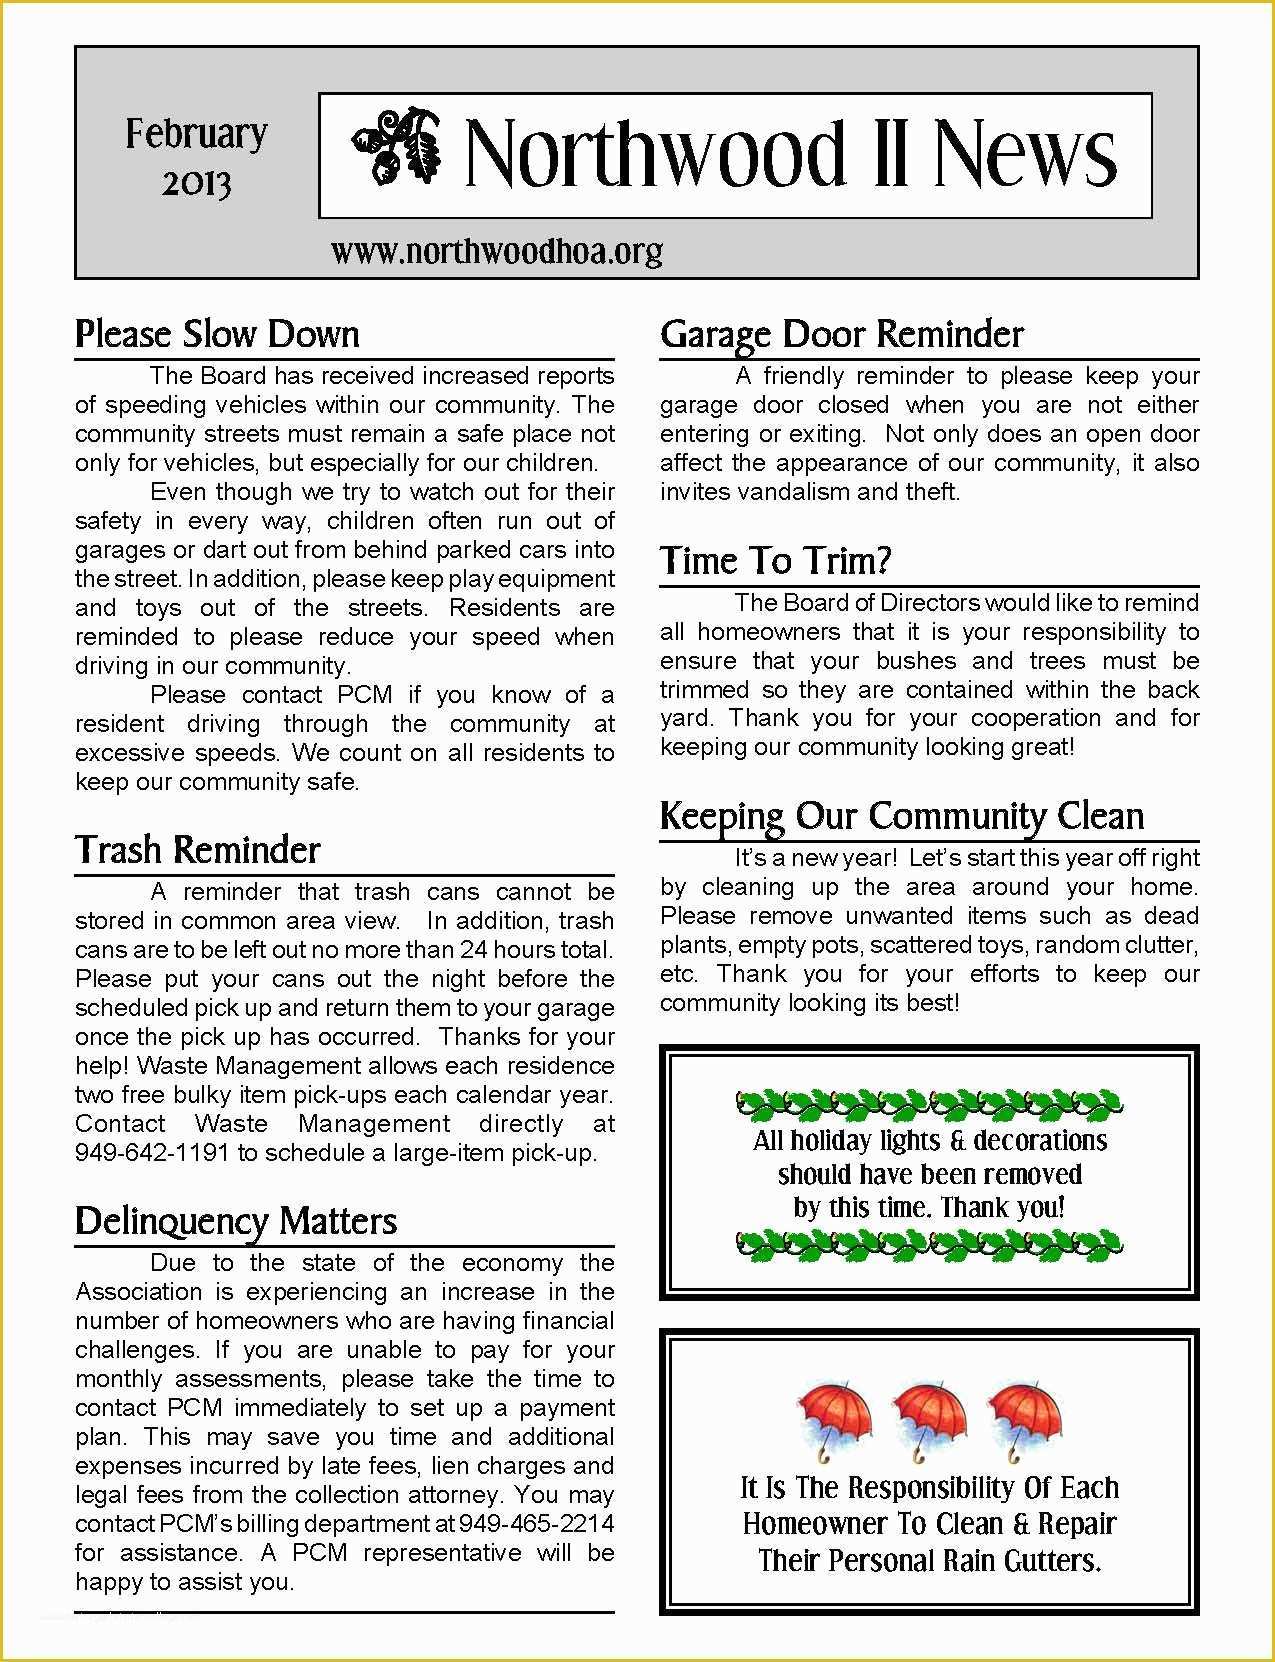 Free Hoa Newsletter Templates Of February 2013 – northwood Ii Nwii Hoa Munity